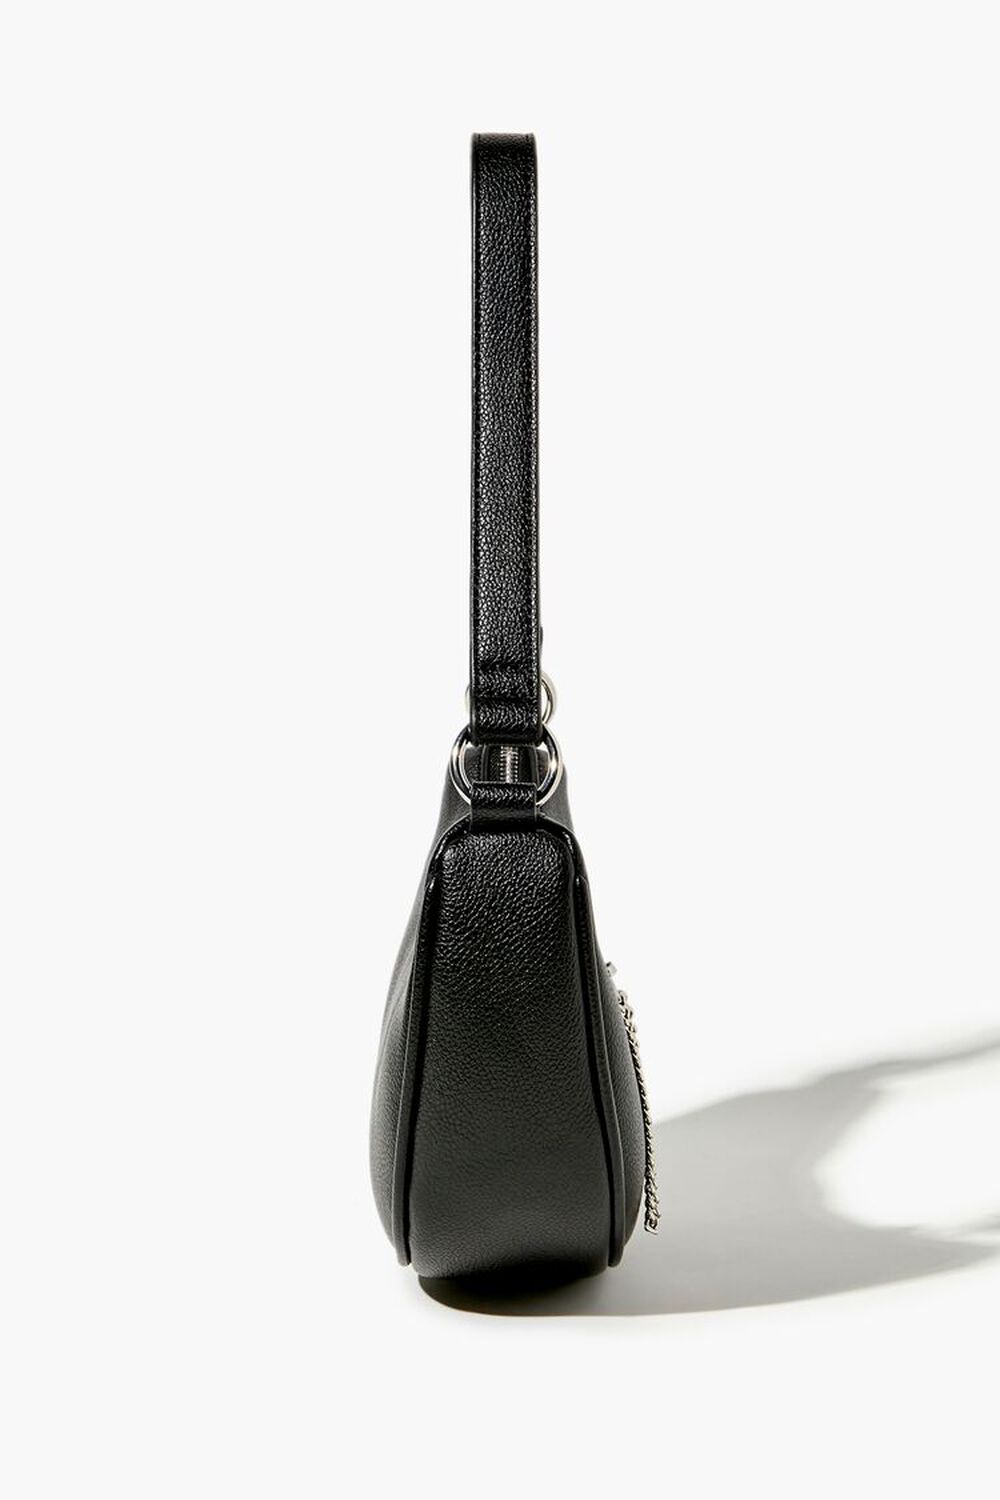 BLACK Faux Leather Baguette Shoulder Bag, image 3